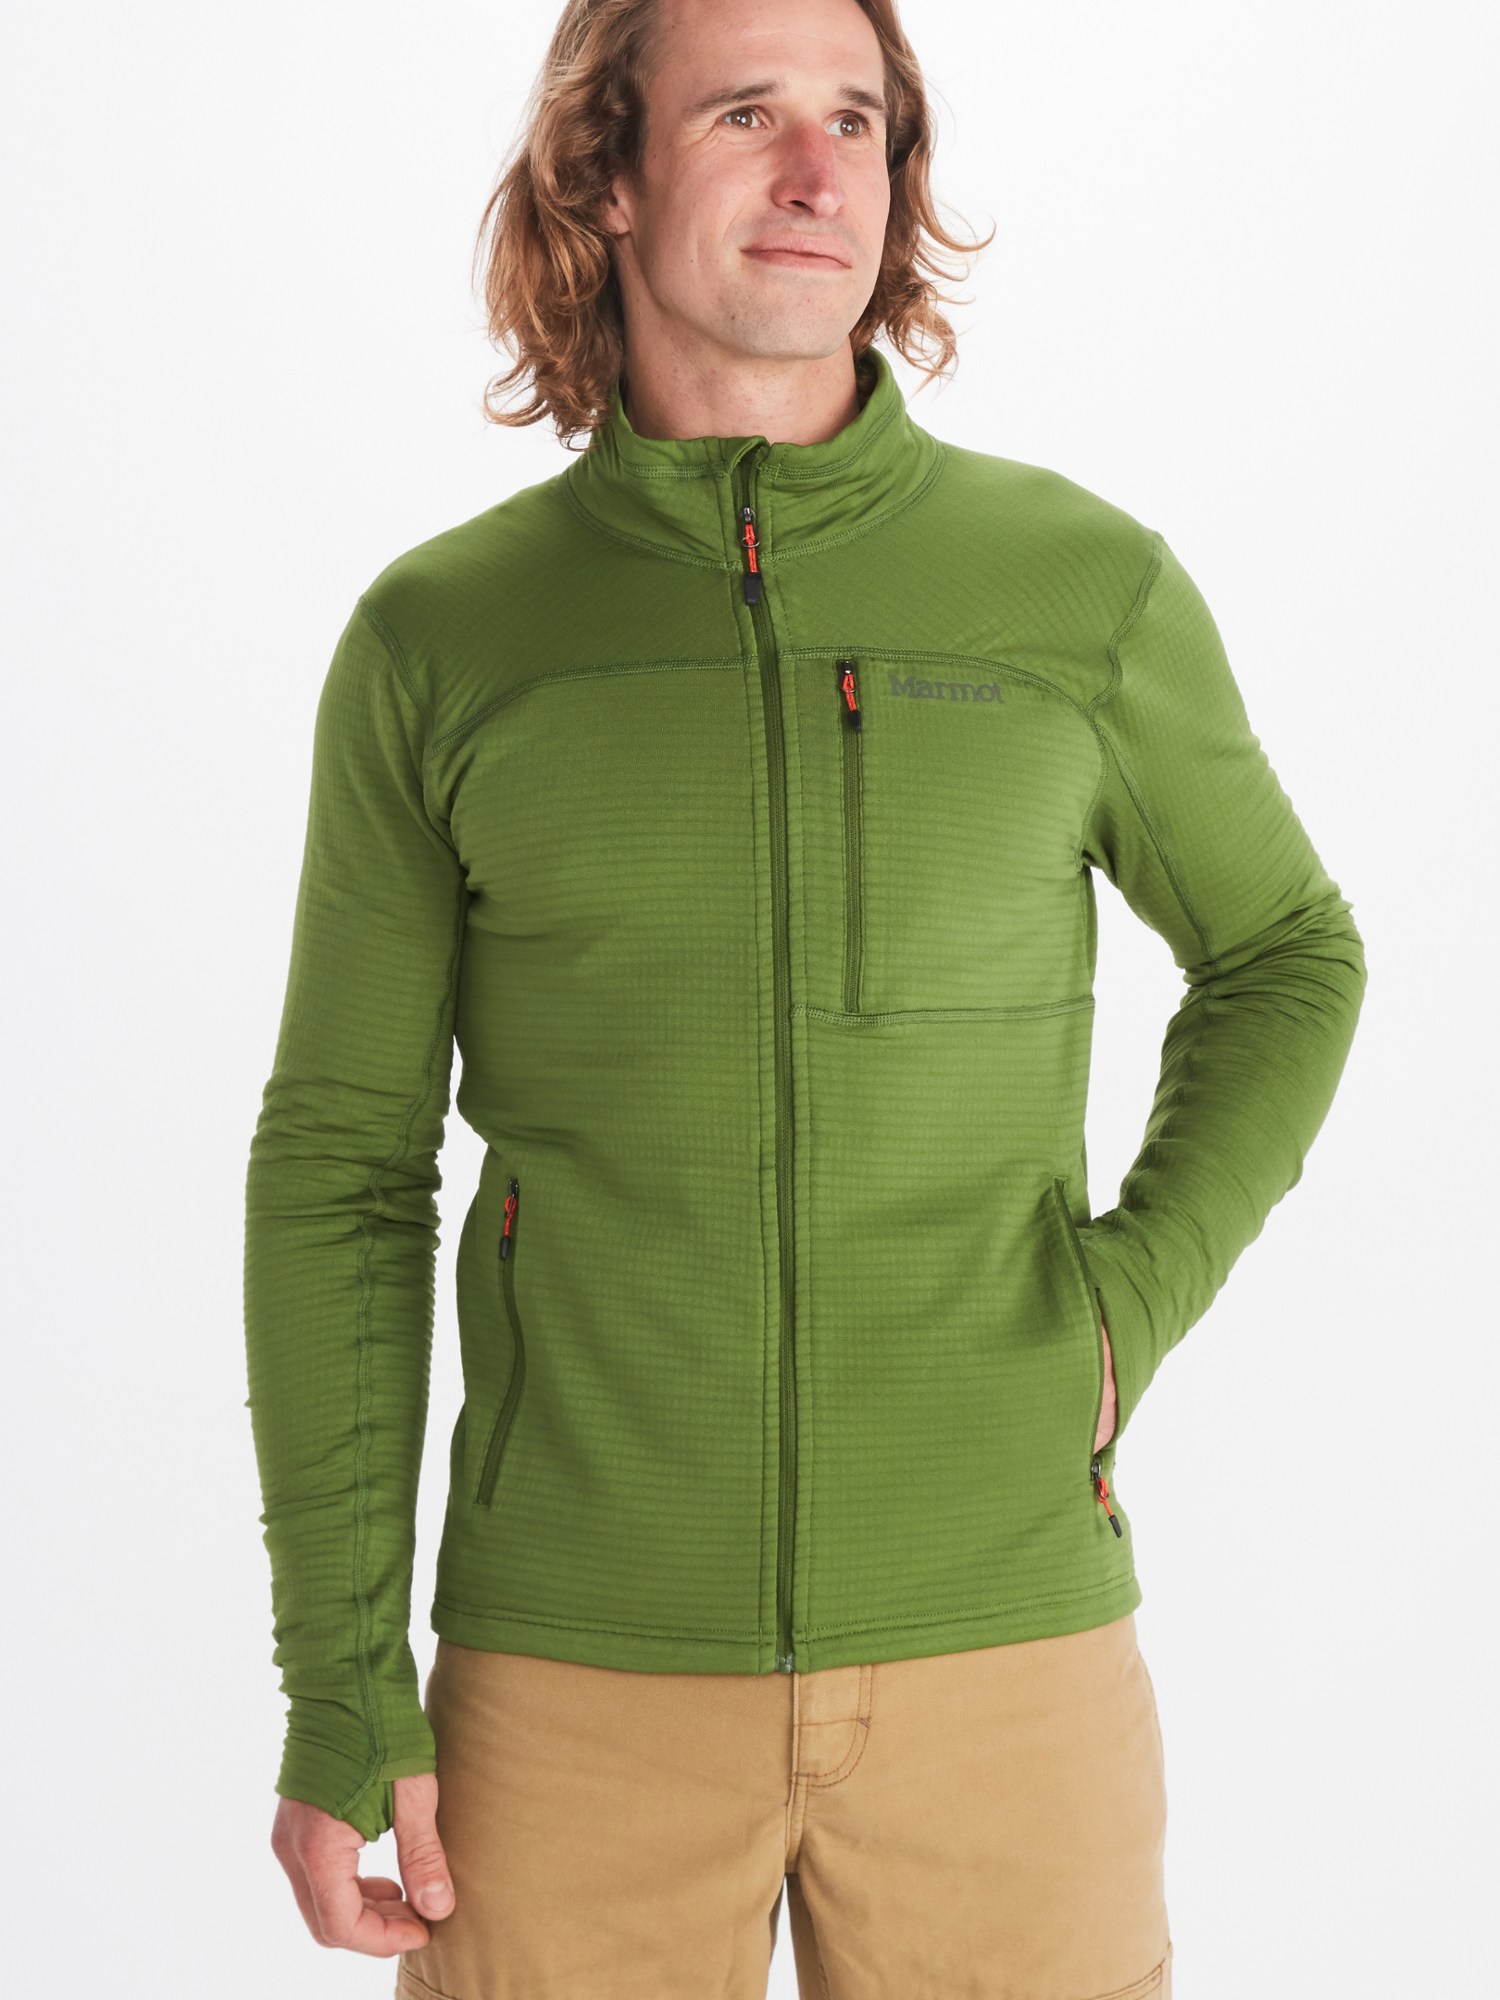 Флисовая куртка Preon - Мужская Marmot, зеленый preon спортивная толстовка marmot зеленый